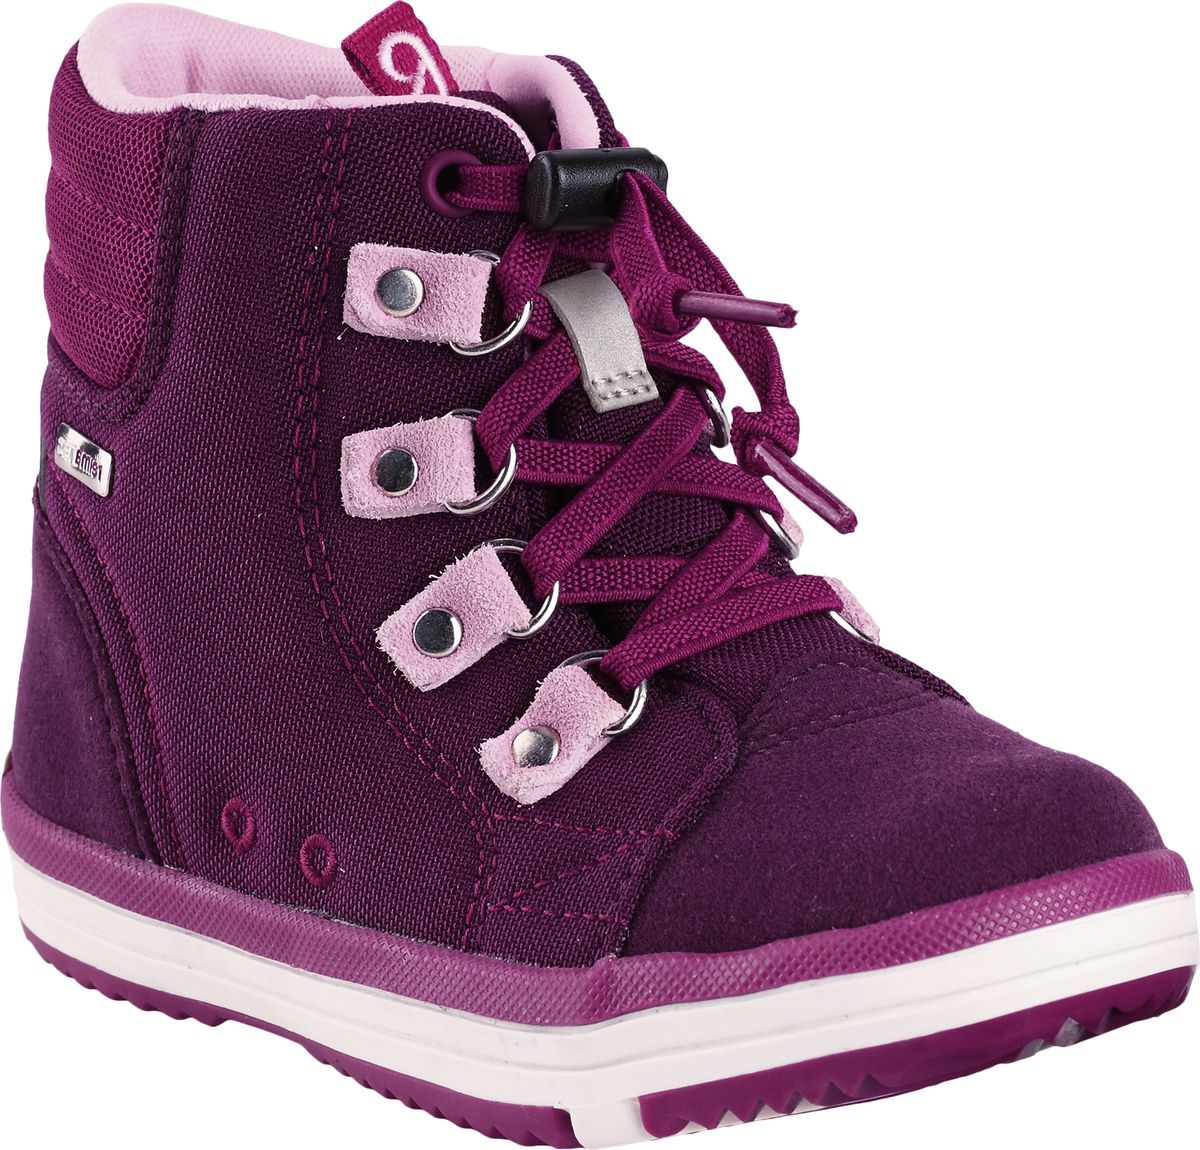 Ботинки детские Reima Wetter, цвет: фиолетовый. 5693434960. Размер 27